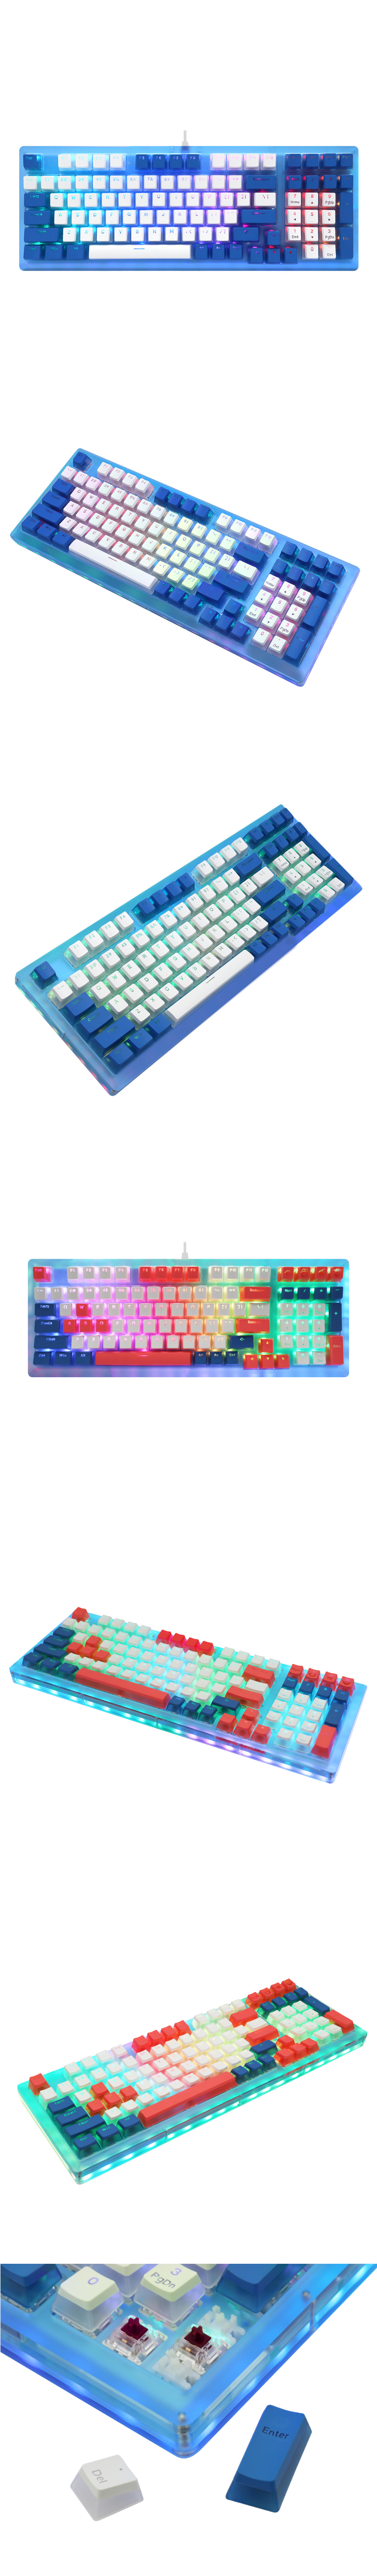 Womier K98 Wired Hotswap RGB Mechanical Keyboard-2